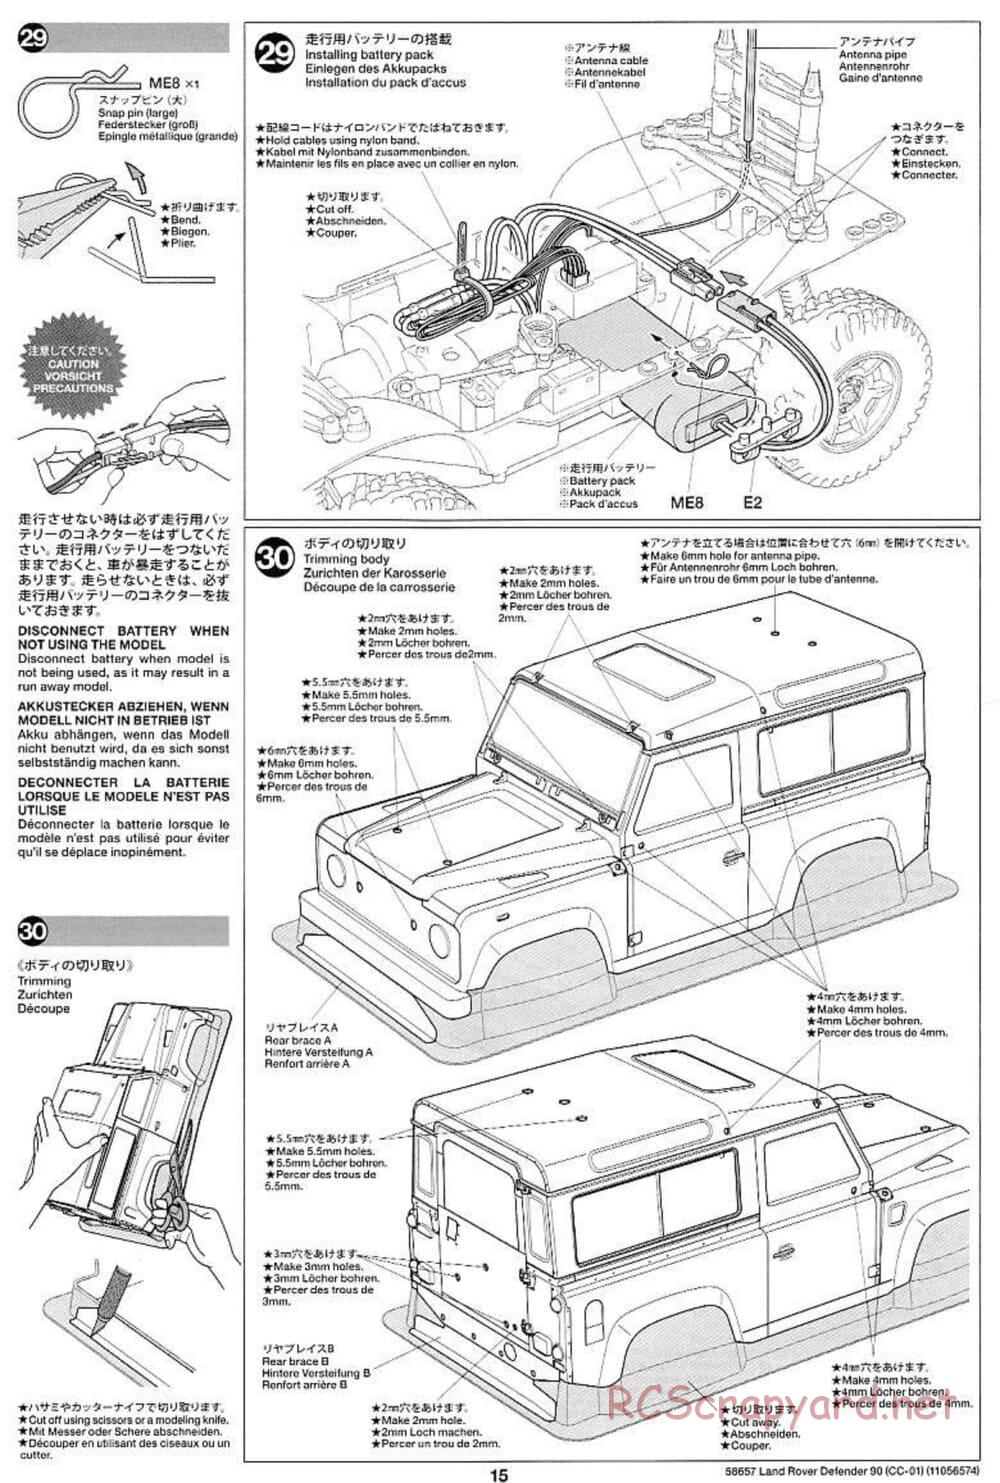 Tamiya - Land Rover Defender 90 - CC-01 Chassis - Manual - Page 15